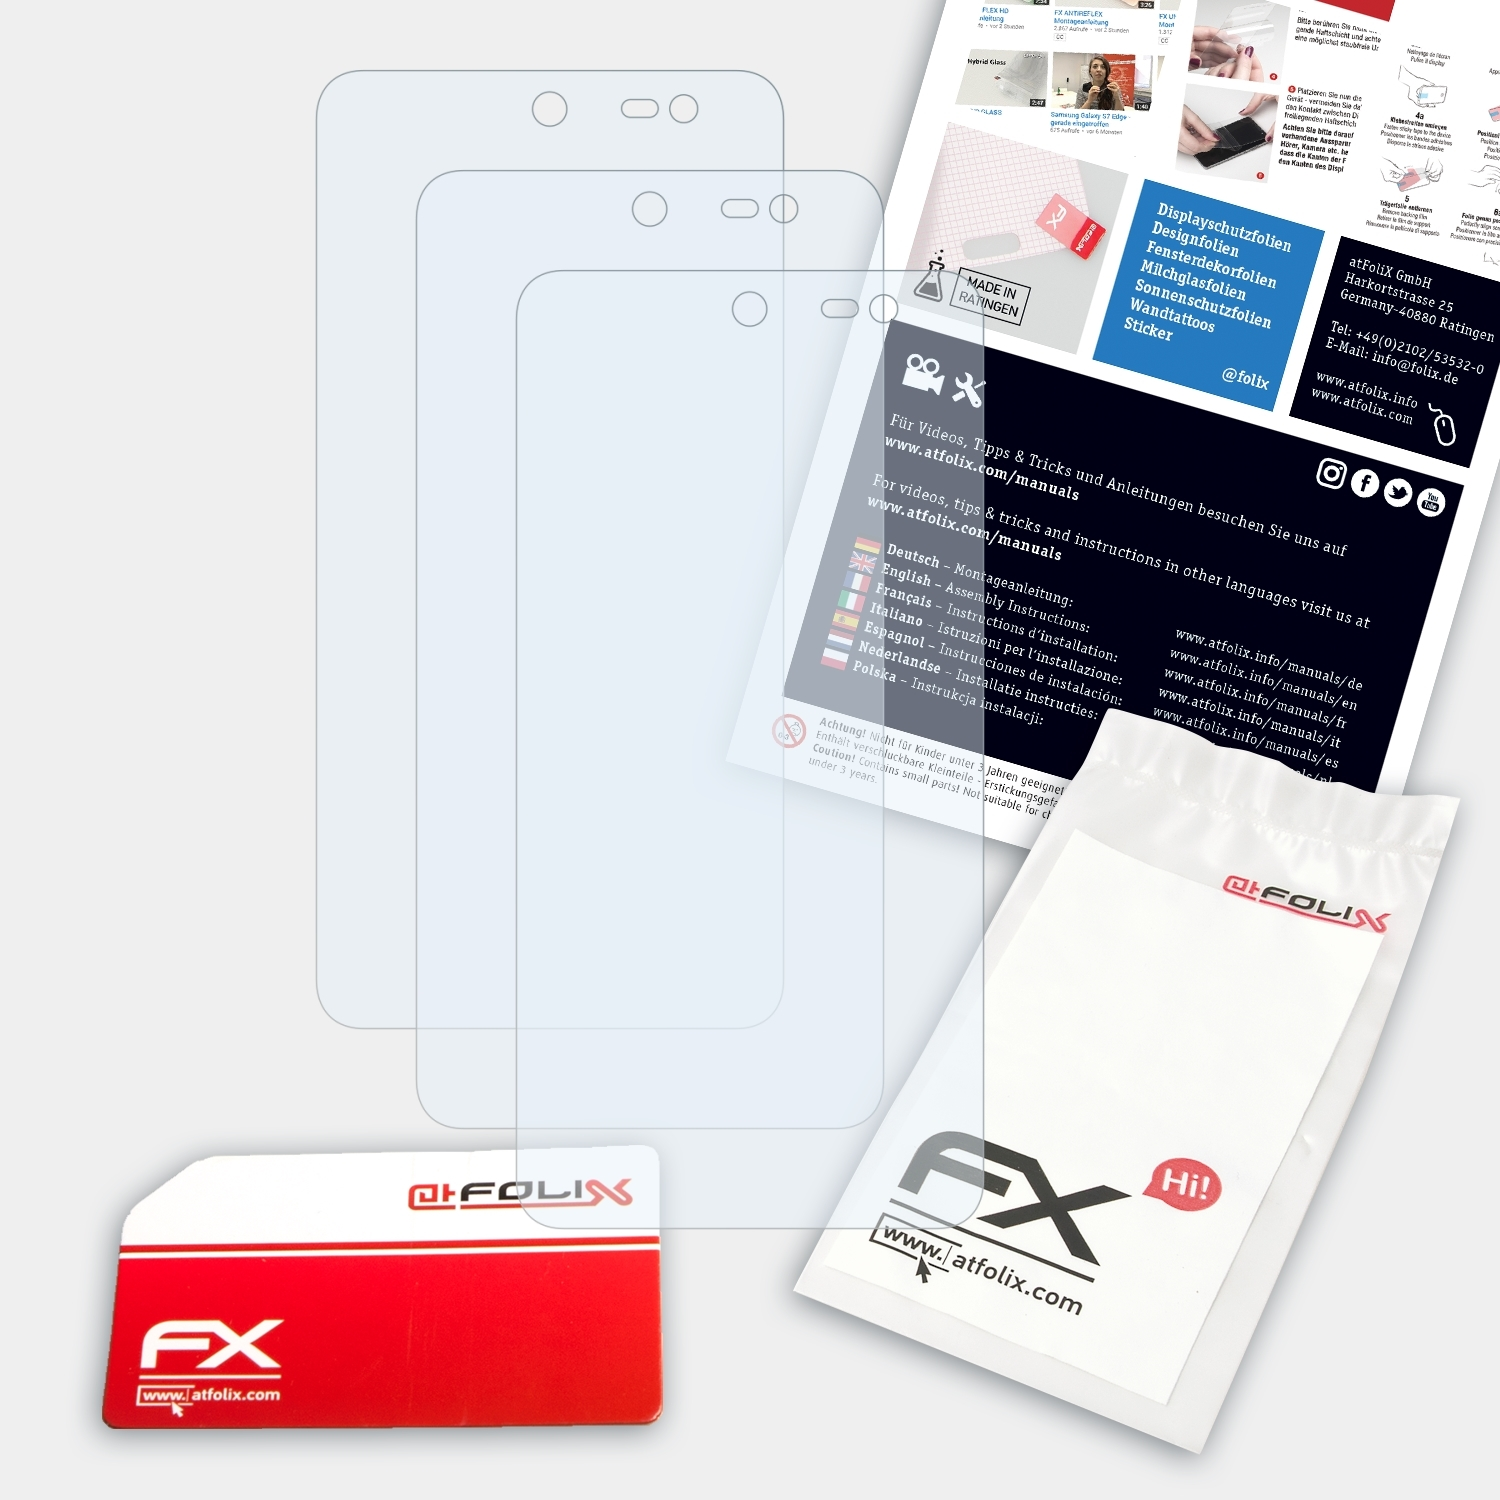 ATFOLIX 3x FX-Clear Displayschutz(für Swift) WileyFox